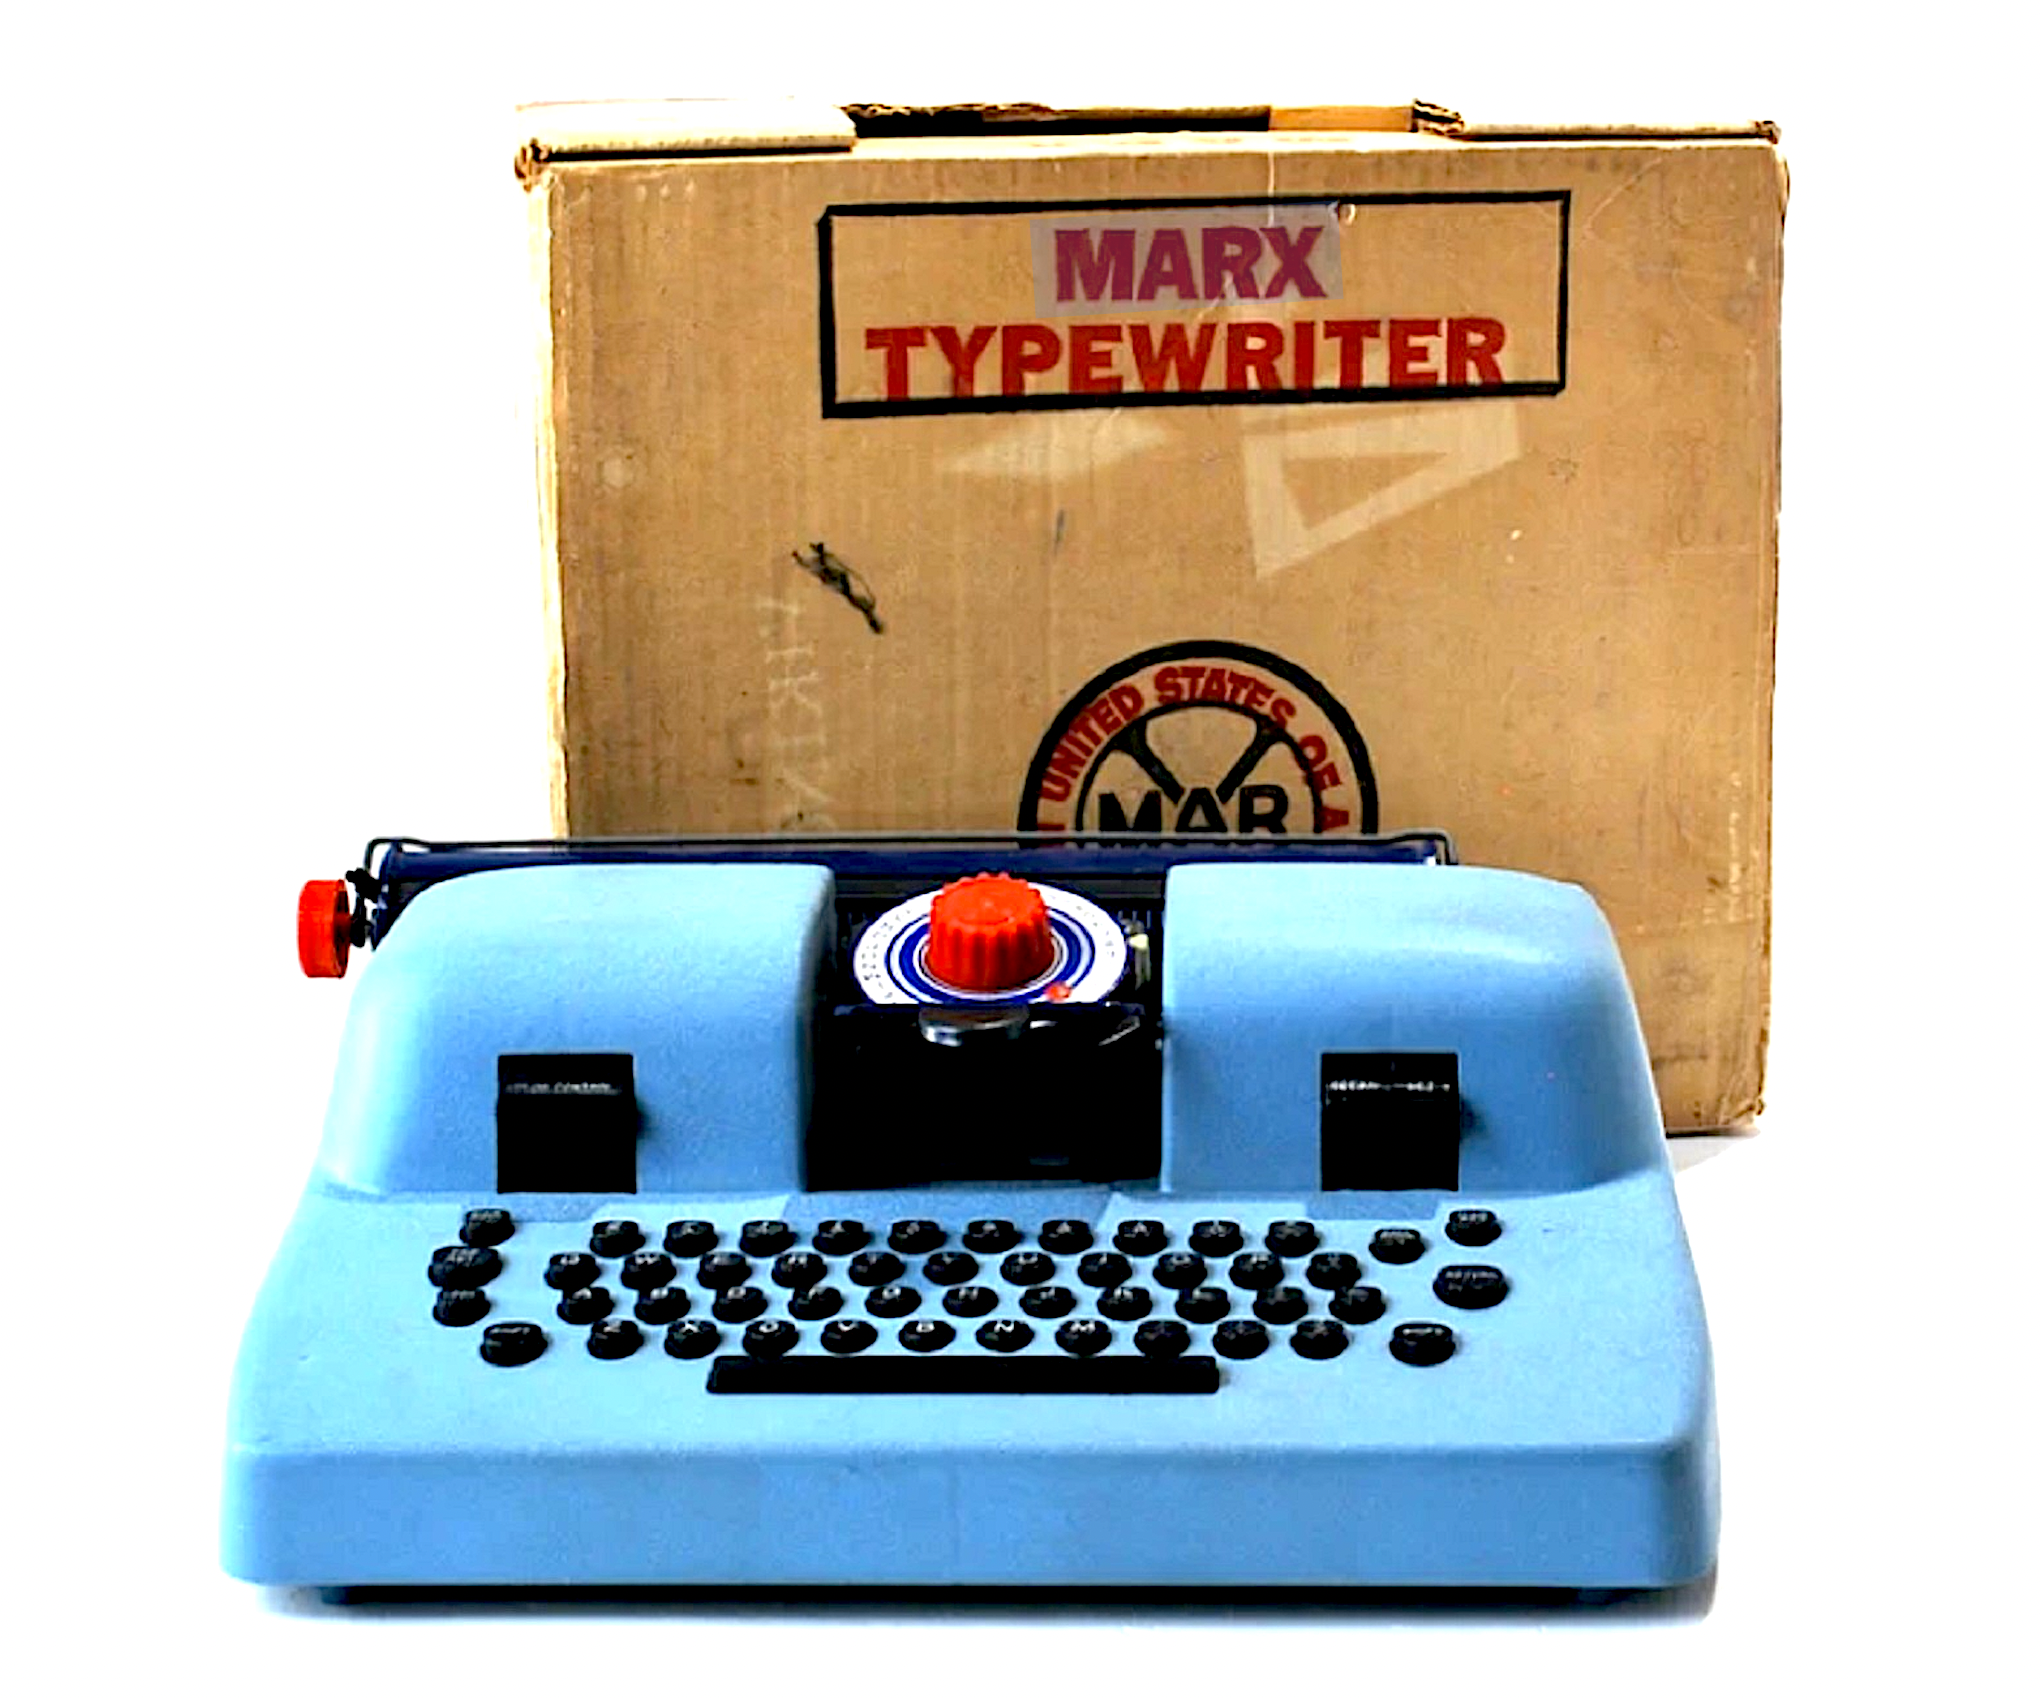 Louis Marx toy typewriter with original box, est. $500-$1,000